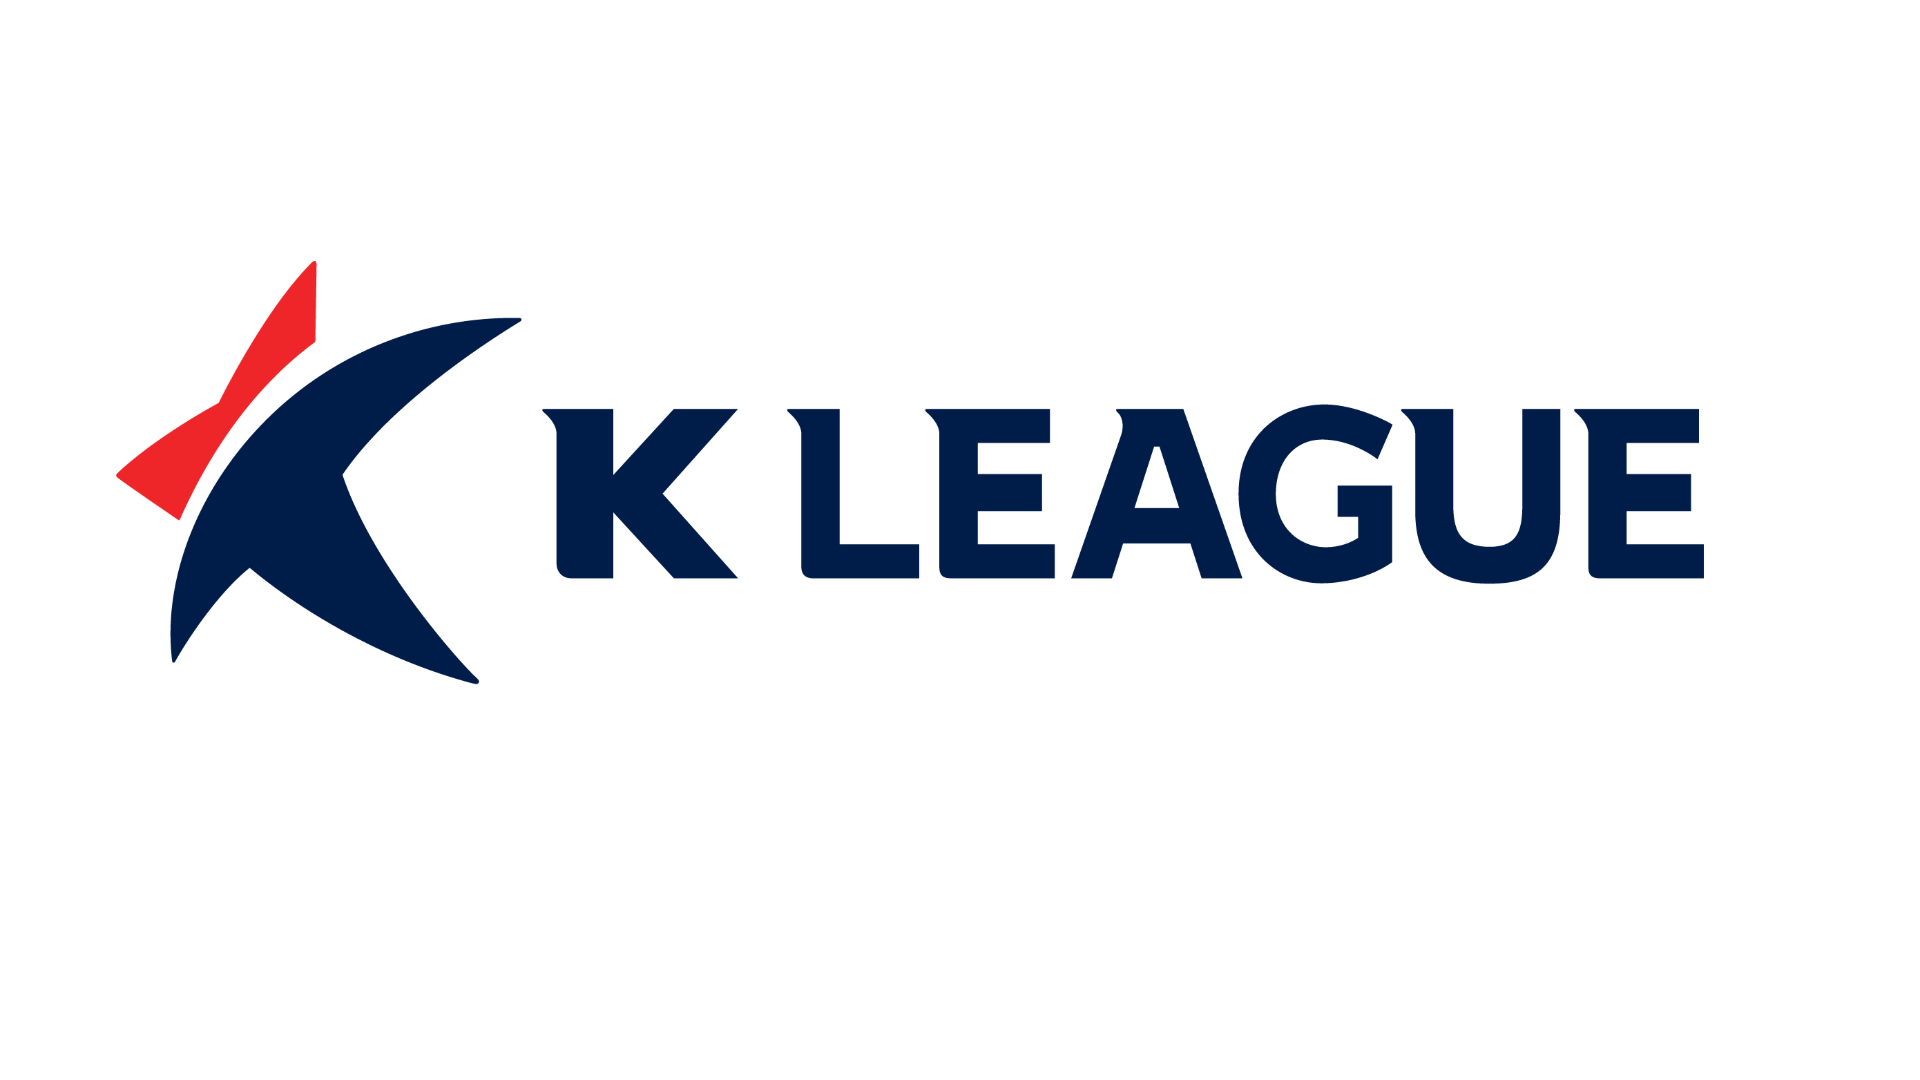 Korea k league 1